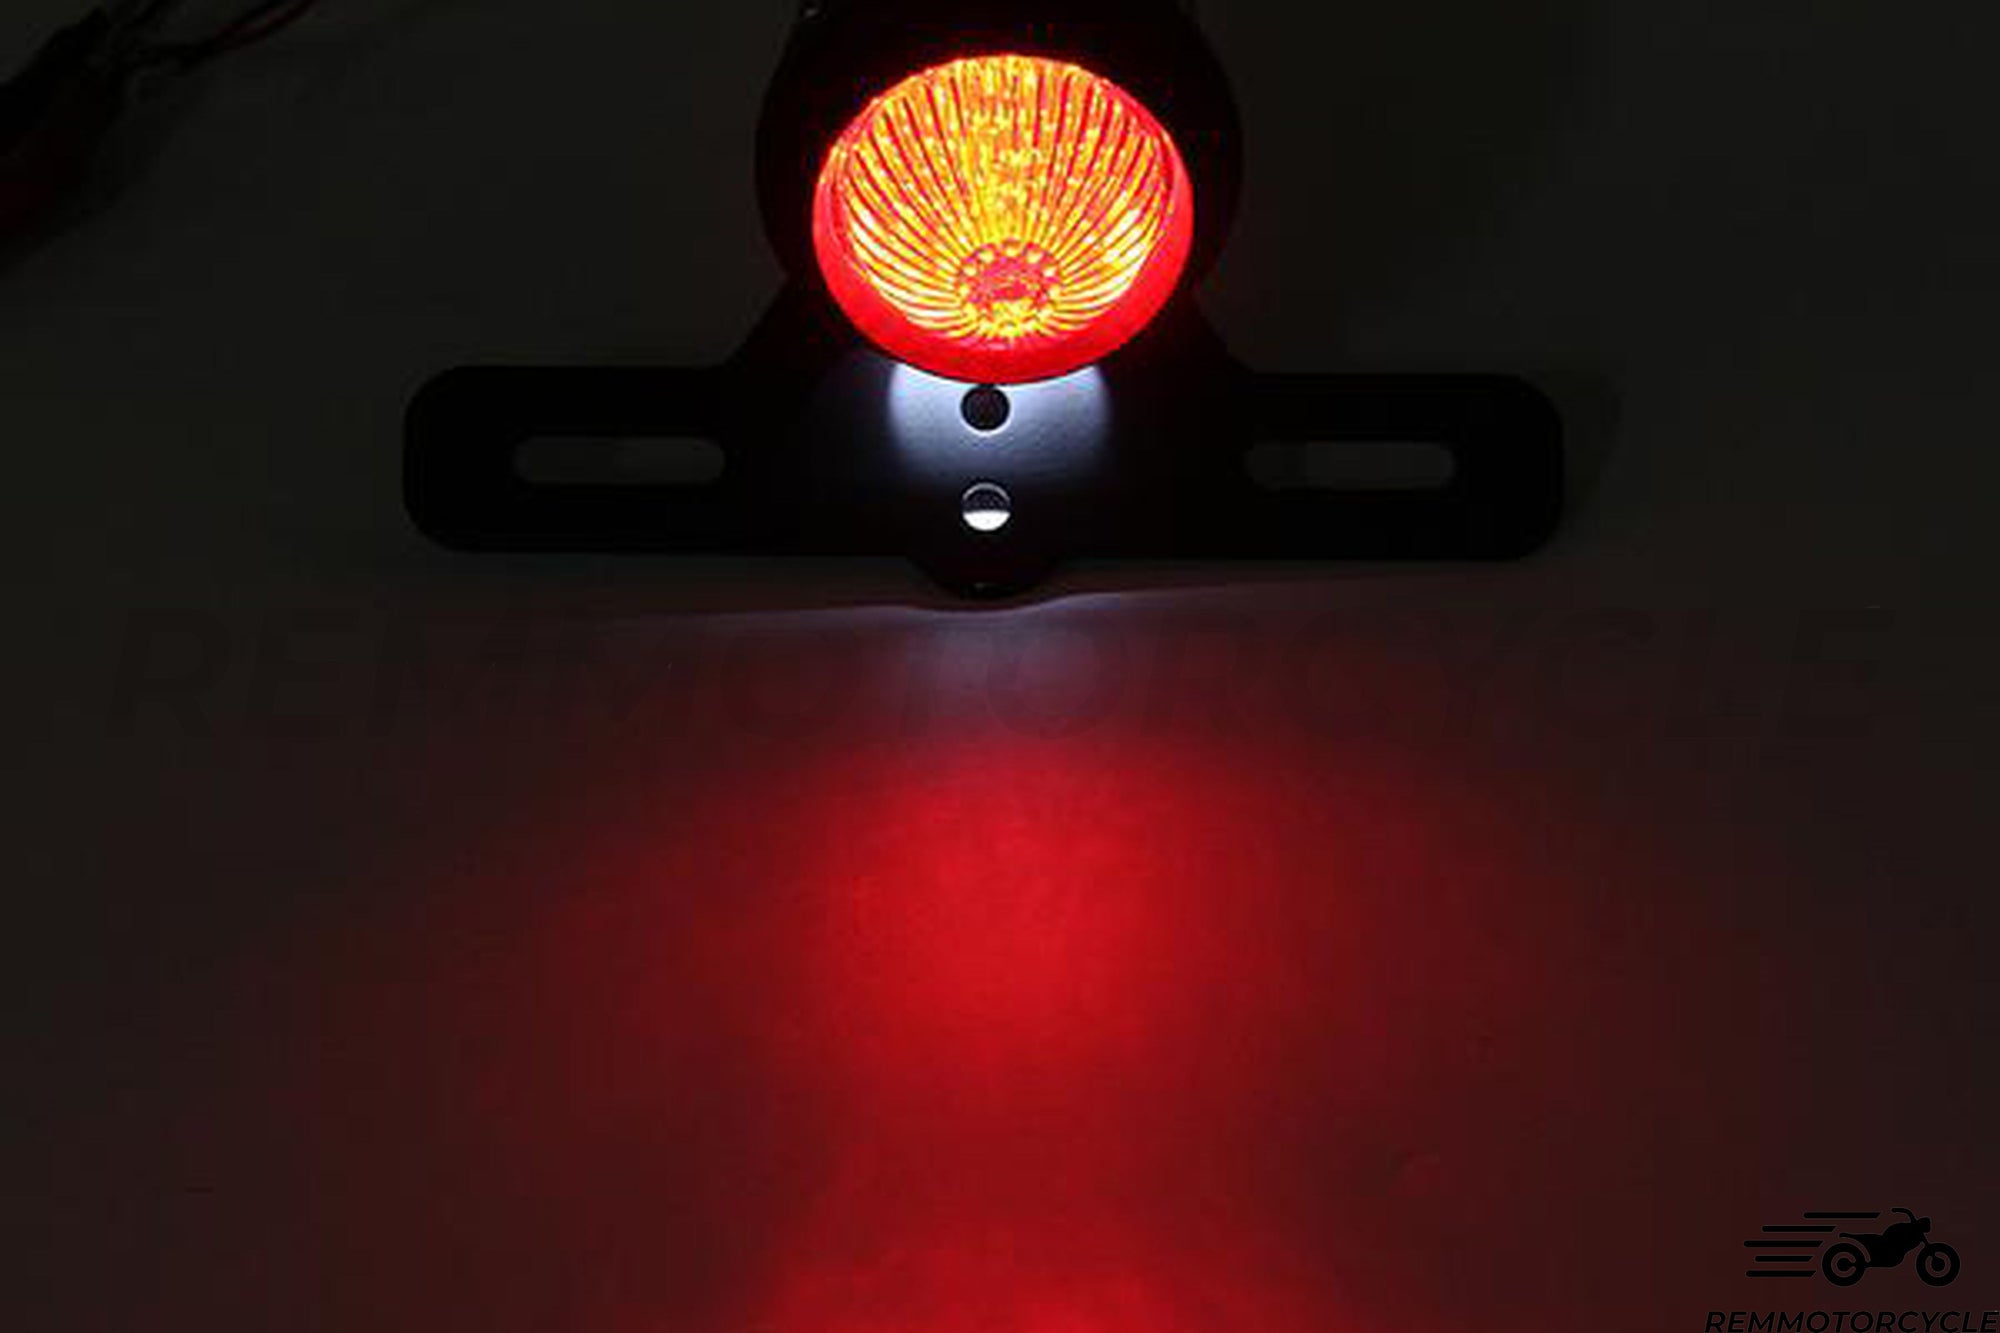 Spot Rive LED rear light